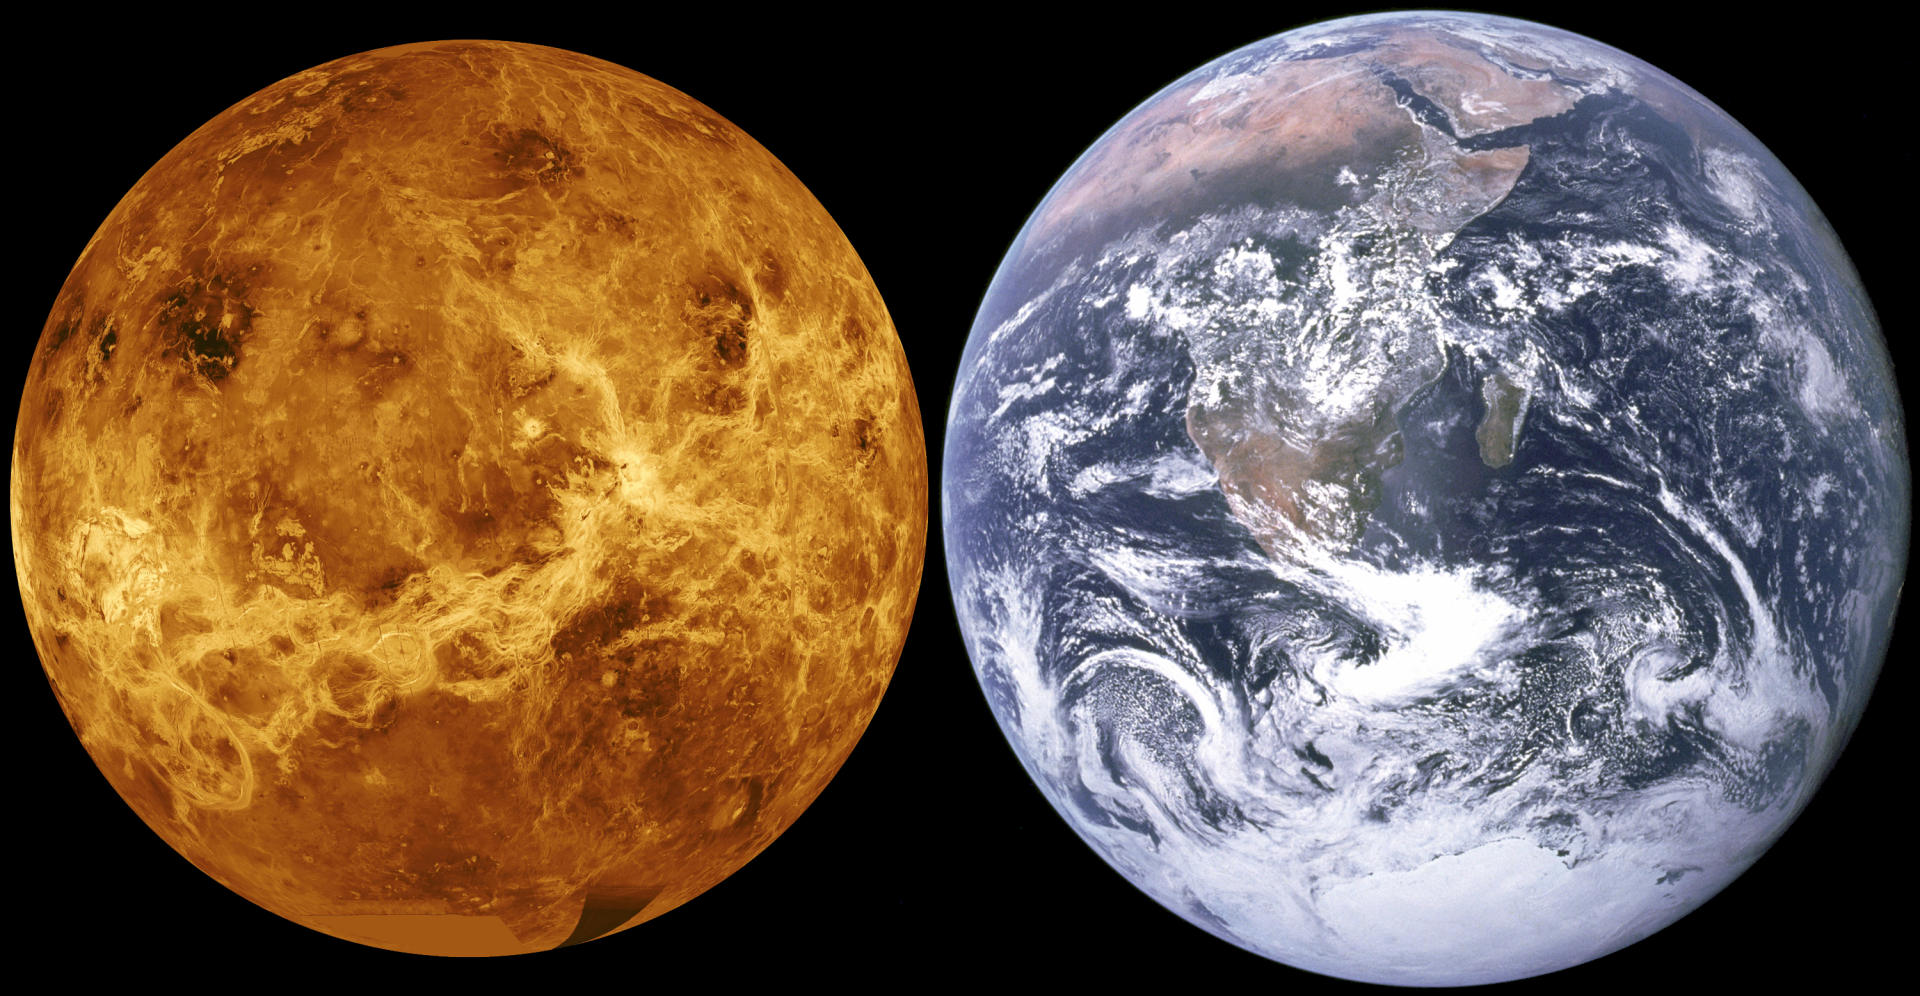 明明金星距离地球更近，为什么各国却争相探索火星？